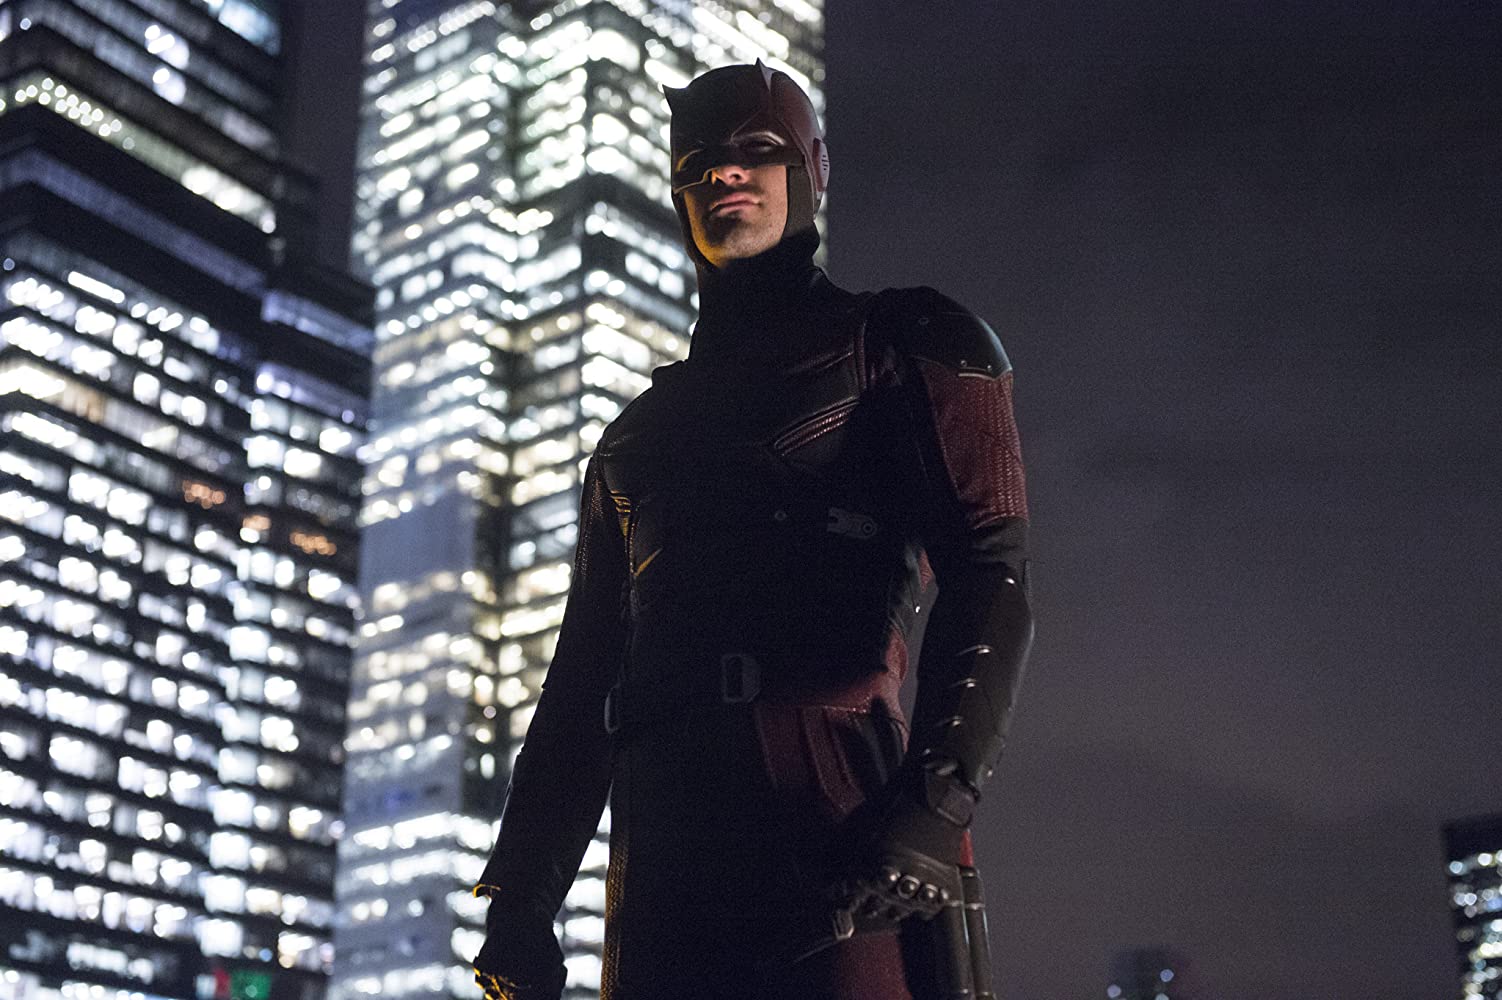 Daredevil (2015-2018)